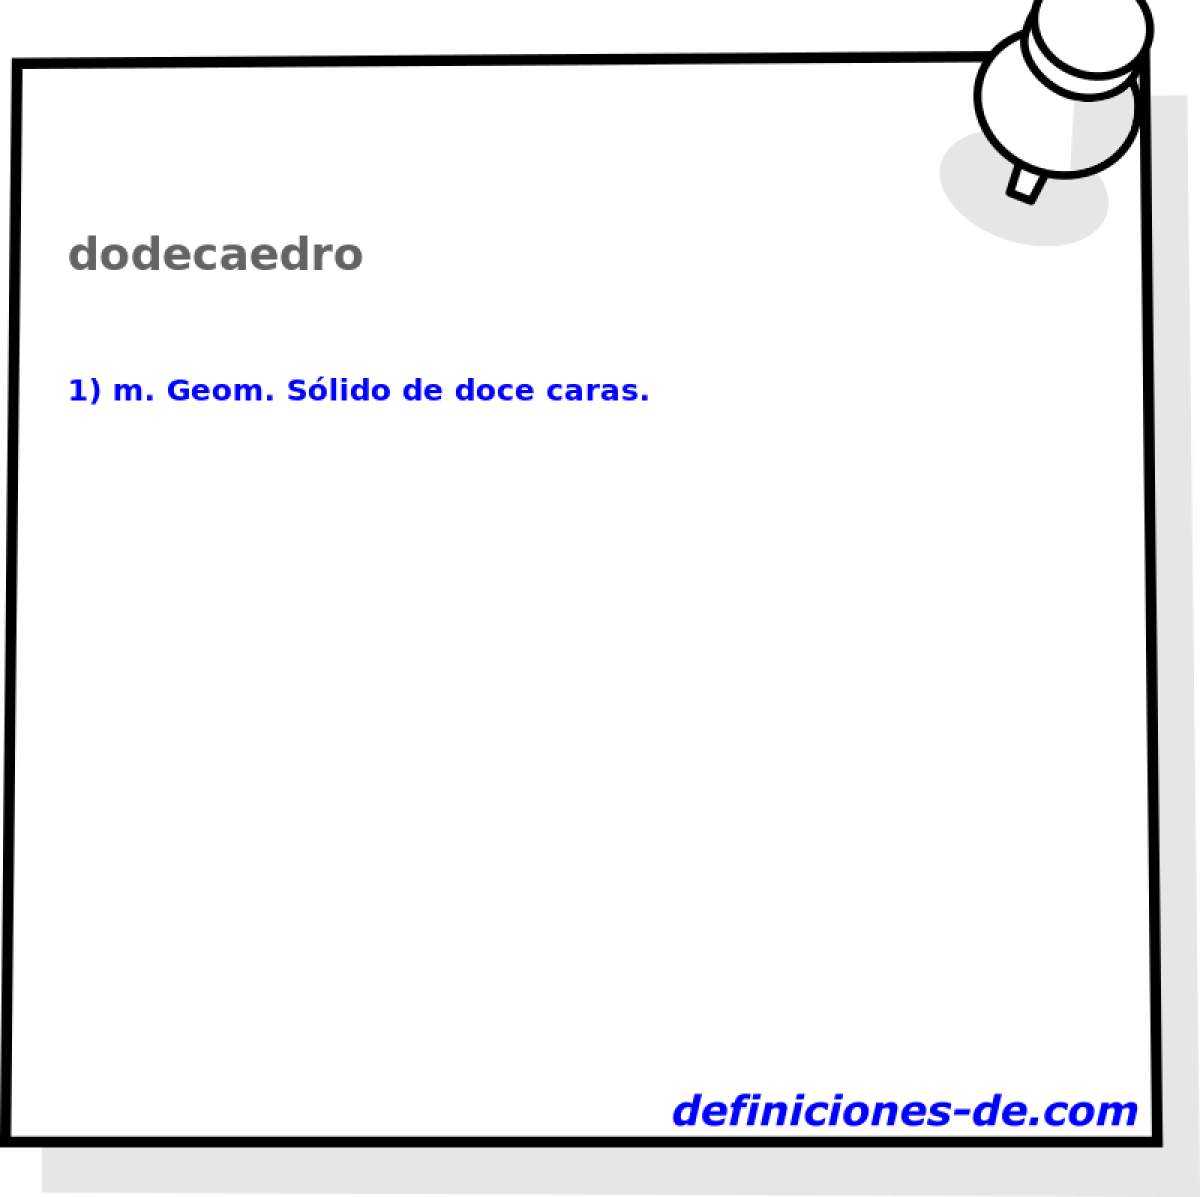 dodecaedro 